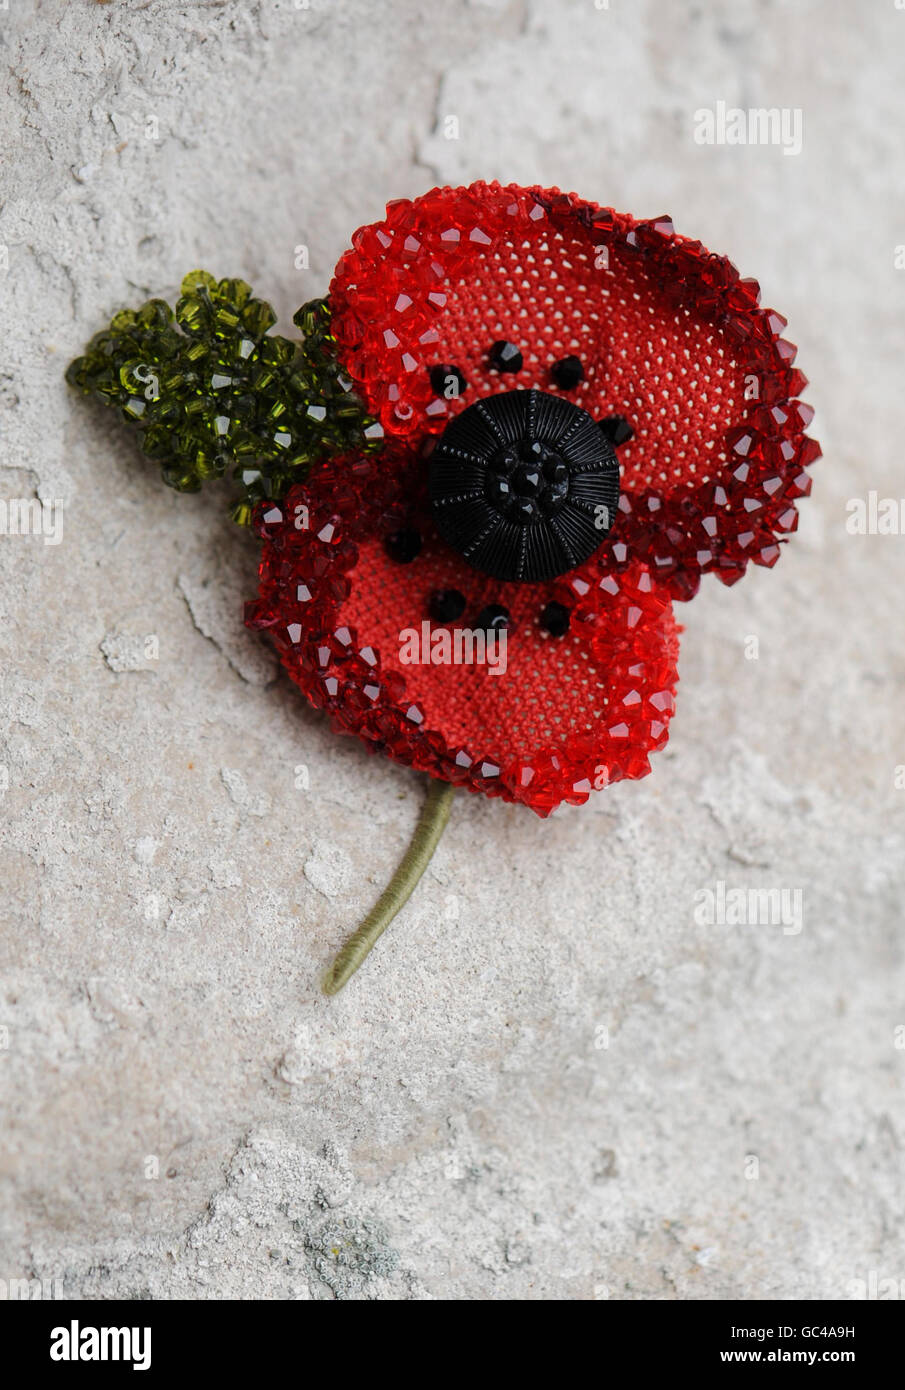 Eine neue limitierte Edition Remembrance Day Mohn von Kleshna entworfen, ausschließlich zur Unterstützung der britischen Truppen. Stockfoto